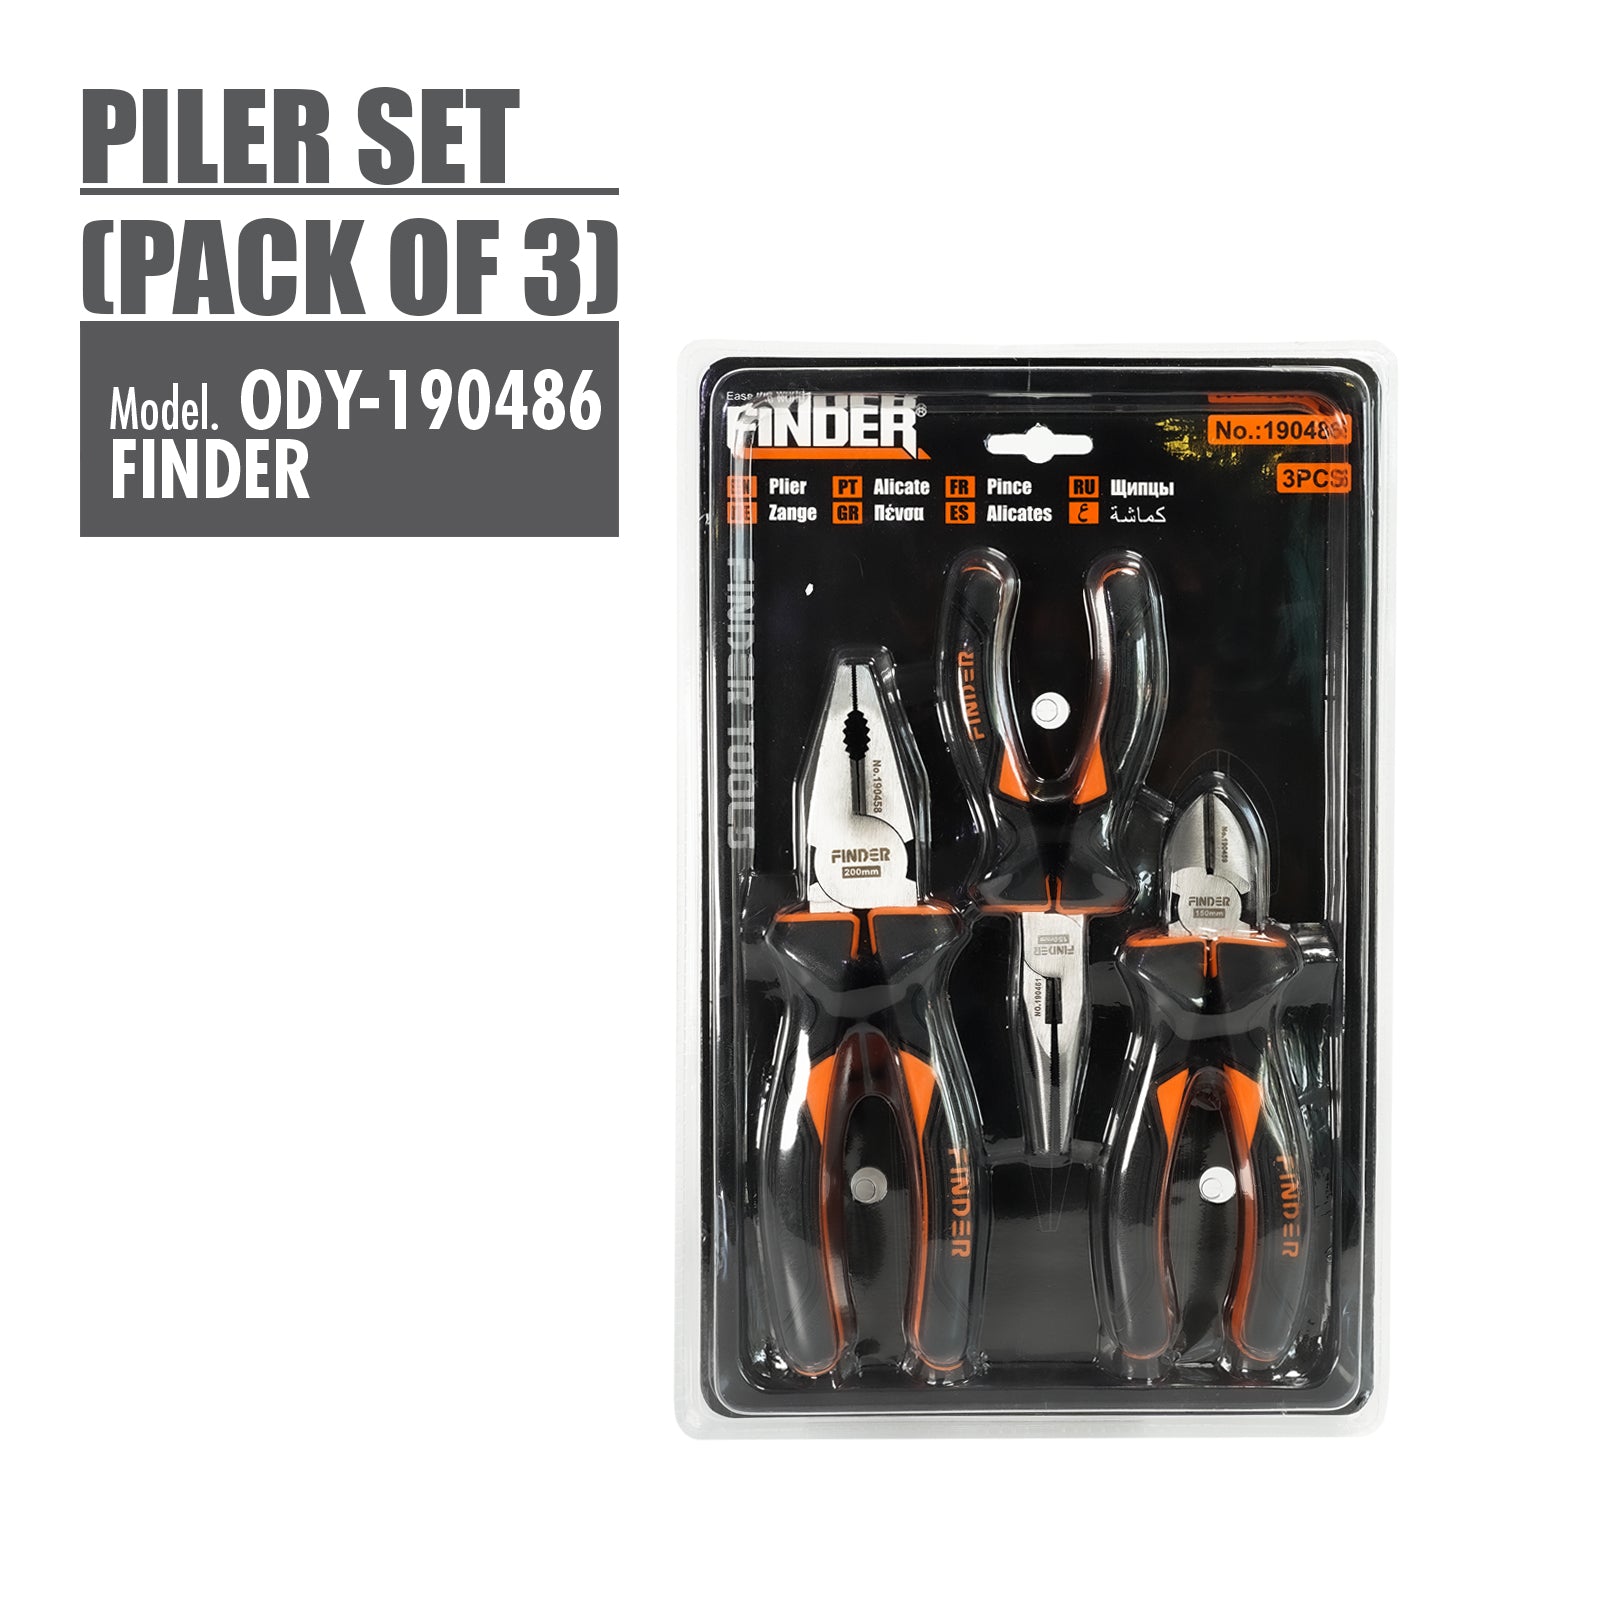 HOUZE - FINDER - Plier Set (Pack of 3)